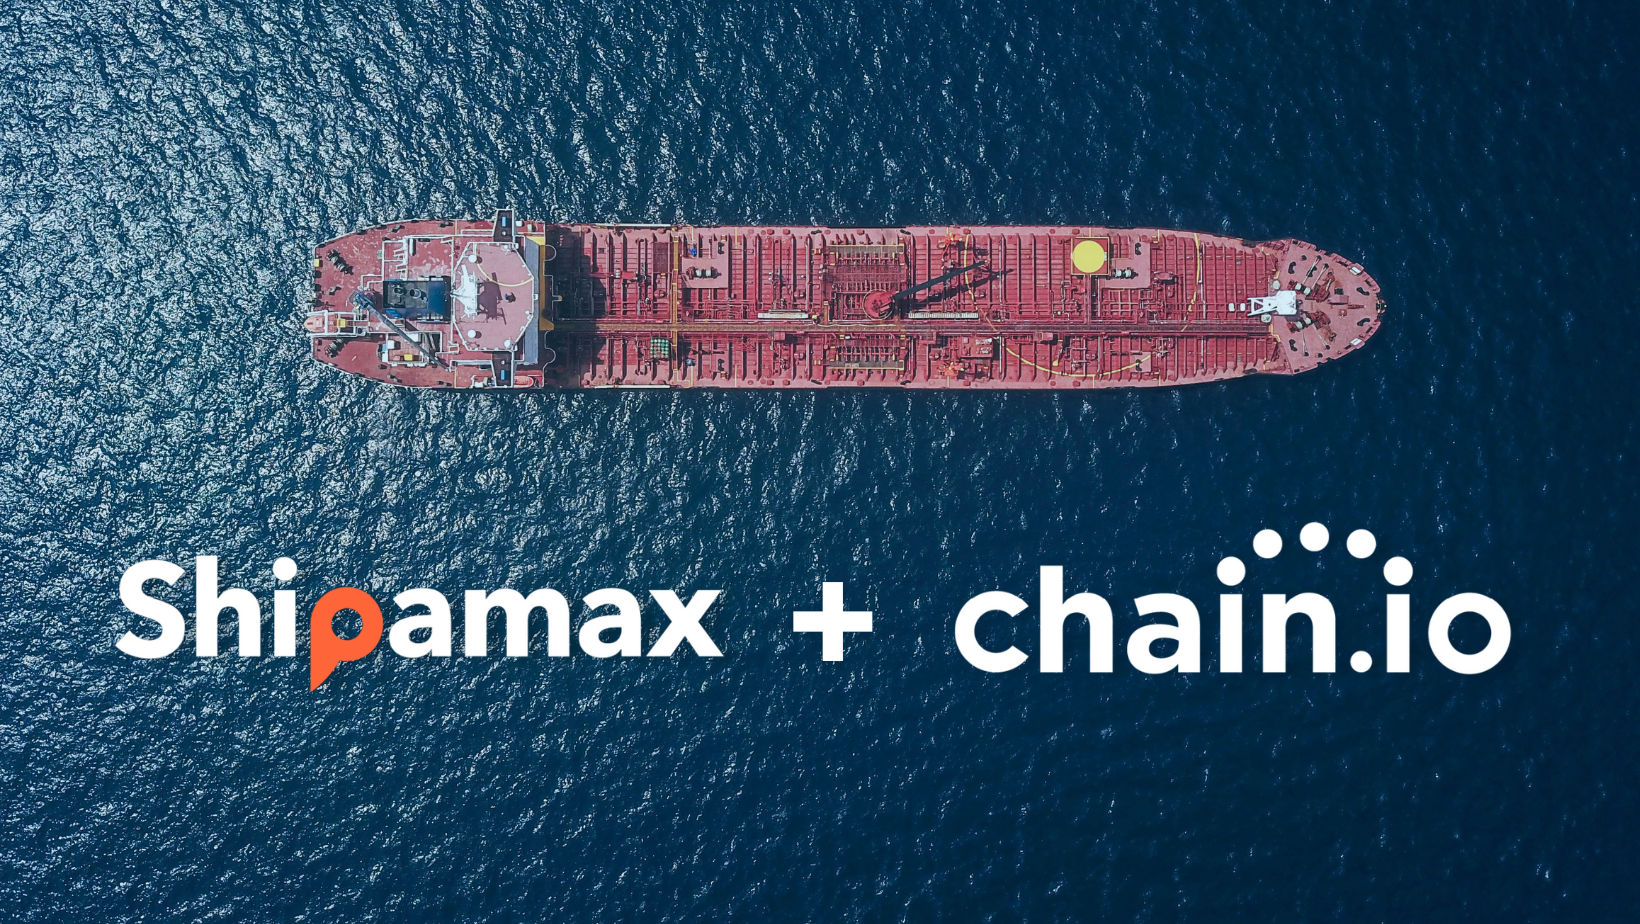 Ship sailing through ocean, chain.io and Shipamax logos